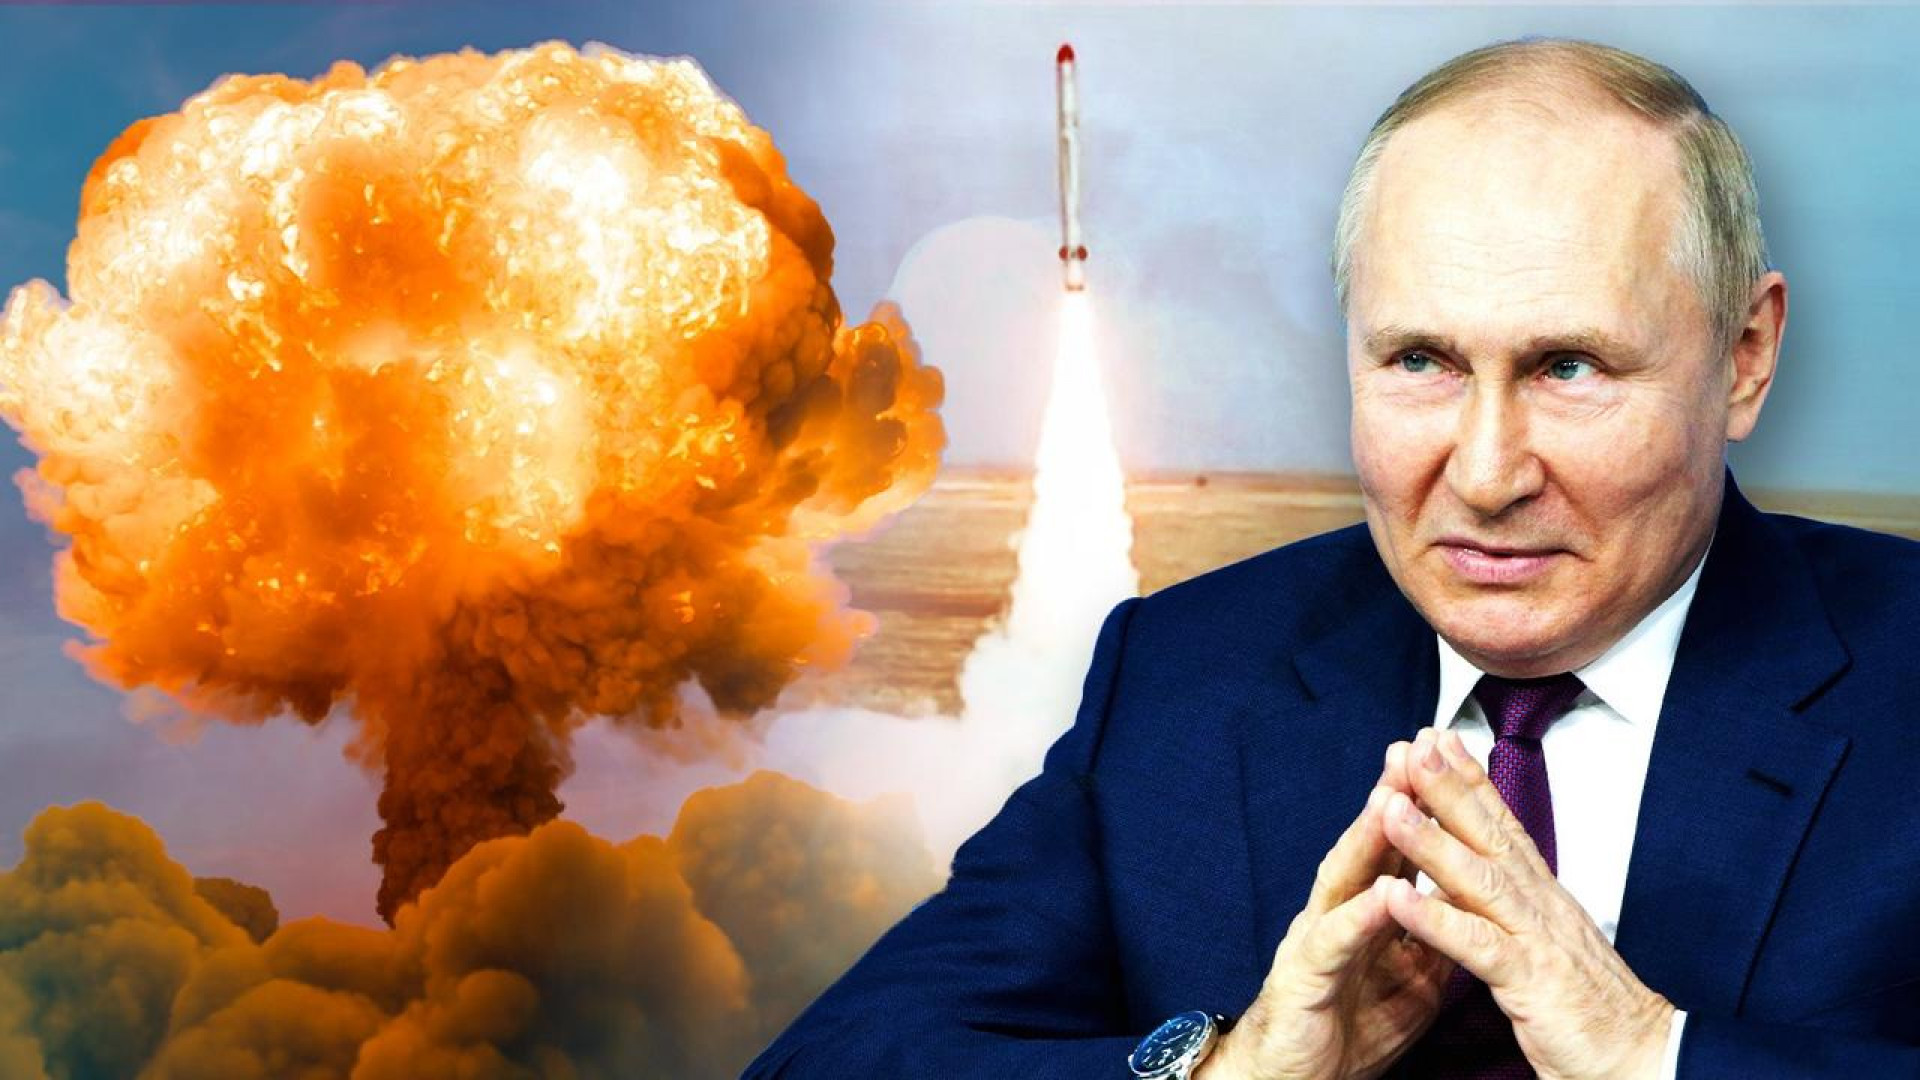 Moscú dice tener pruebas de que Ucrania está preparando una bomba nuclear sucia